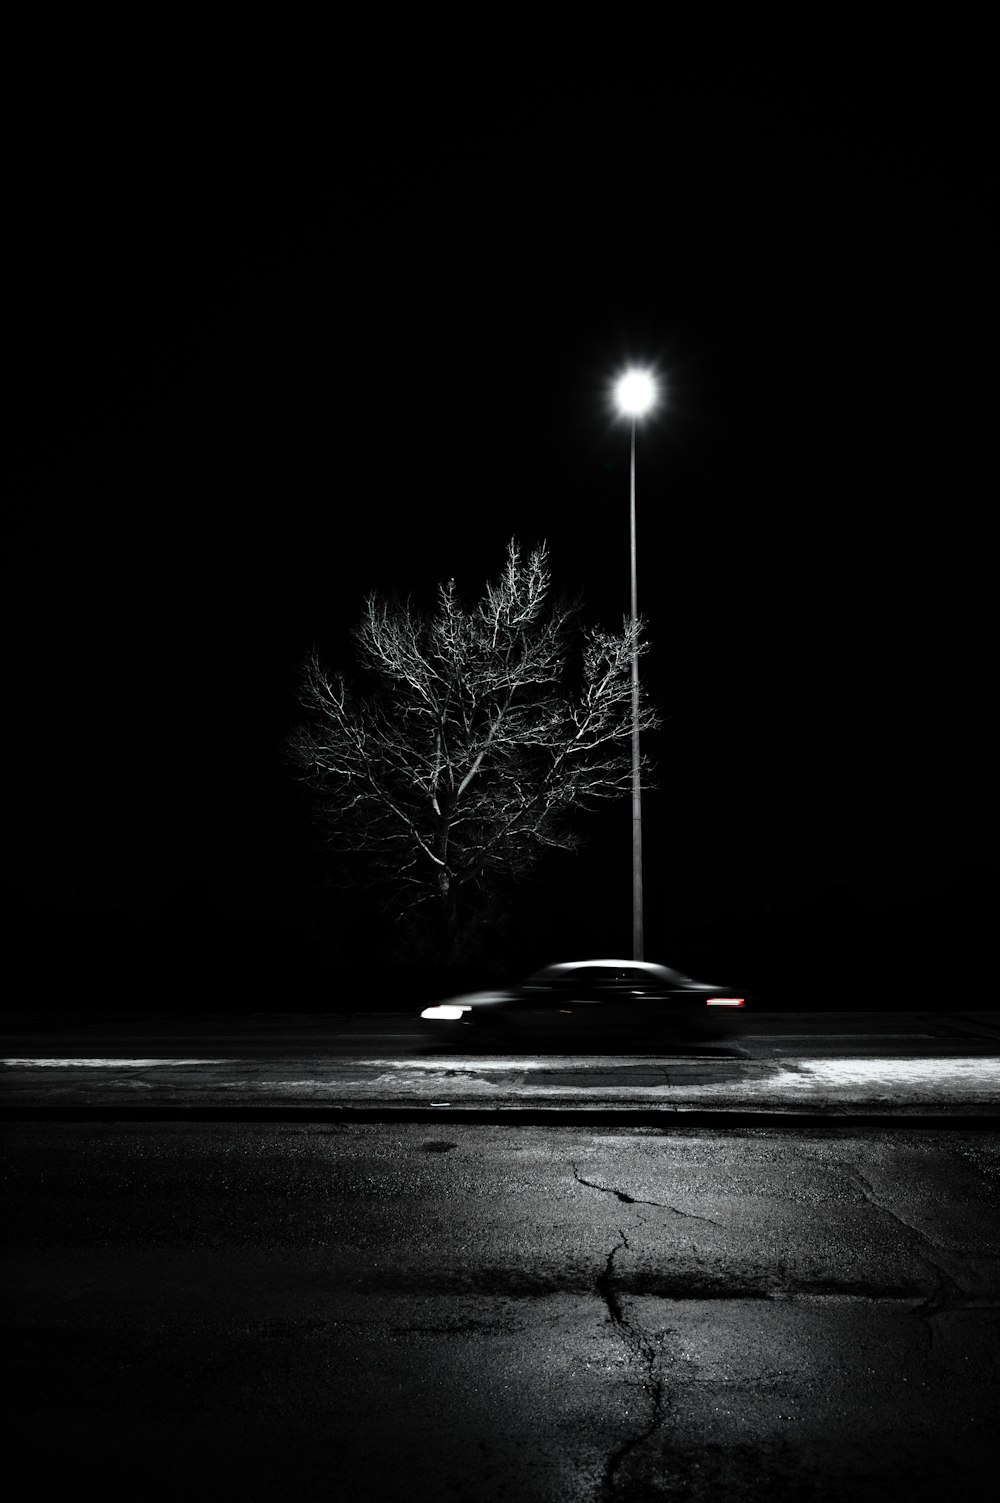 voiture noire sur la route pendant la nuit